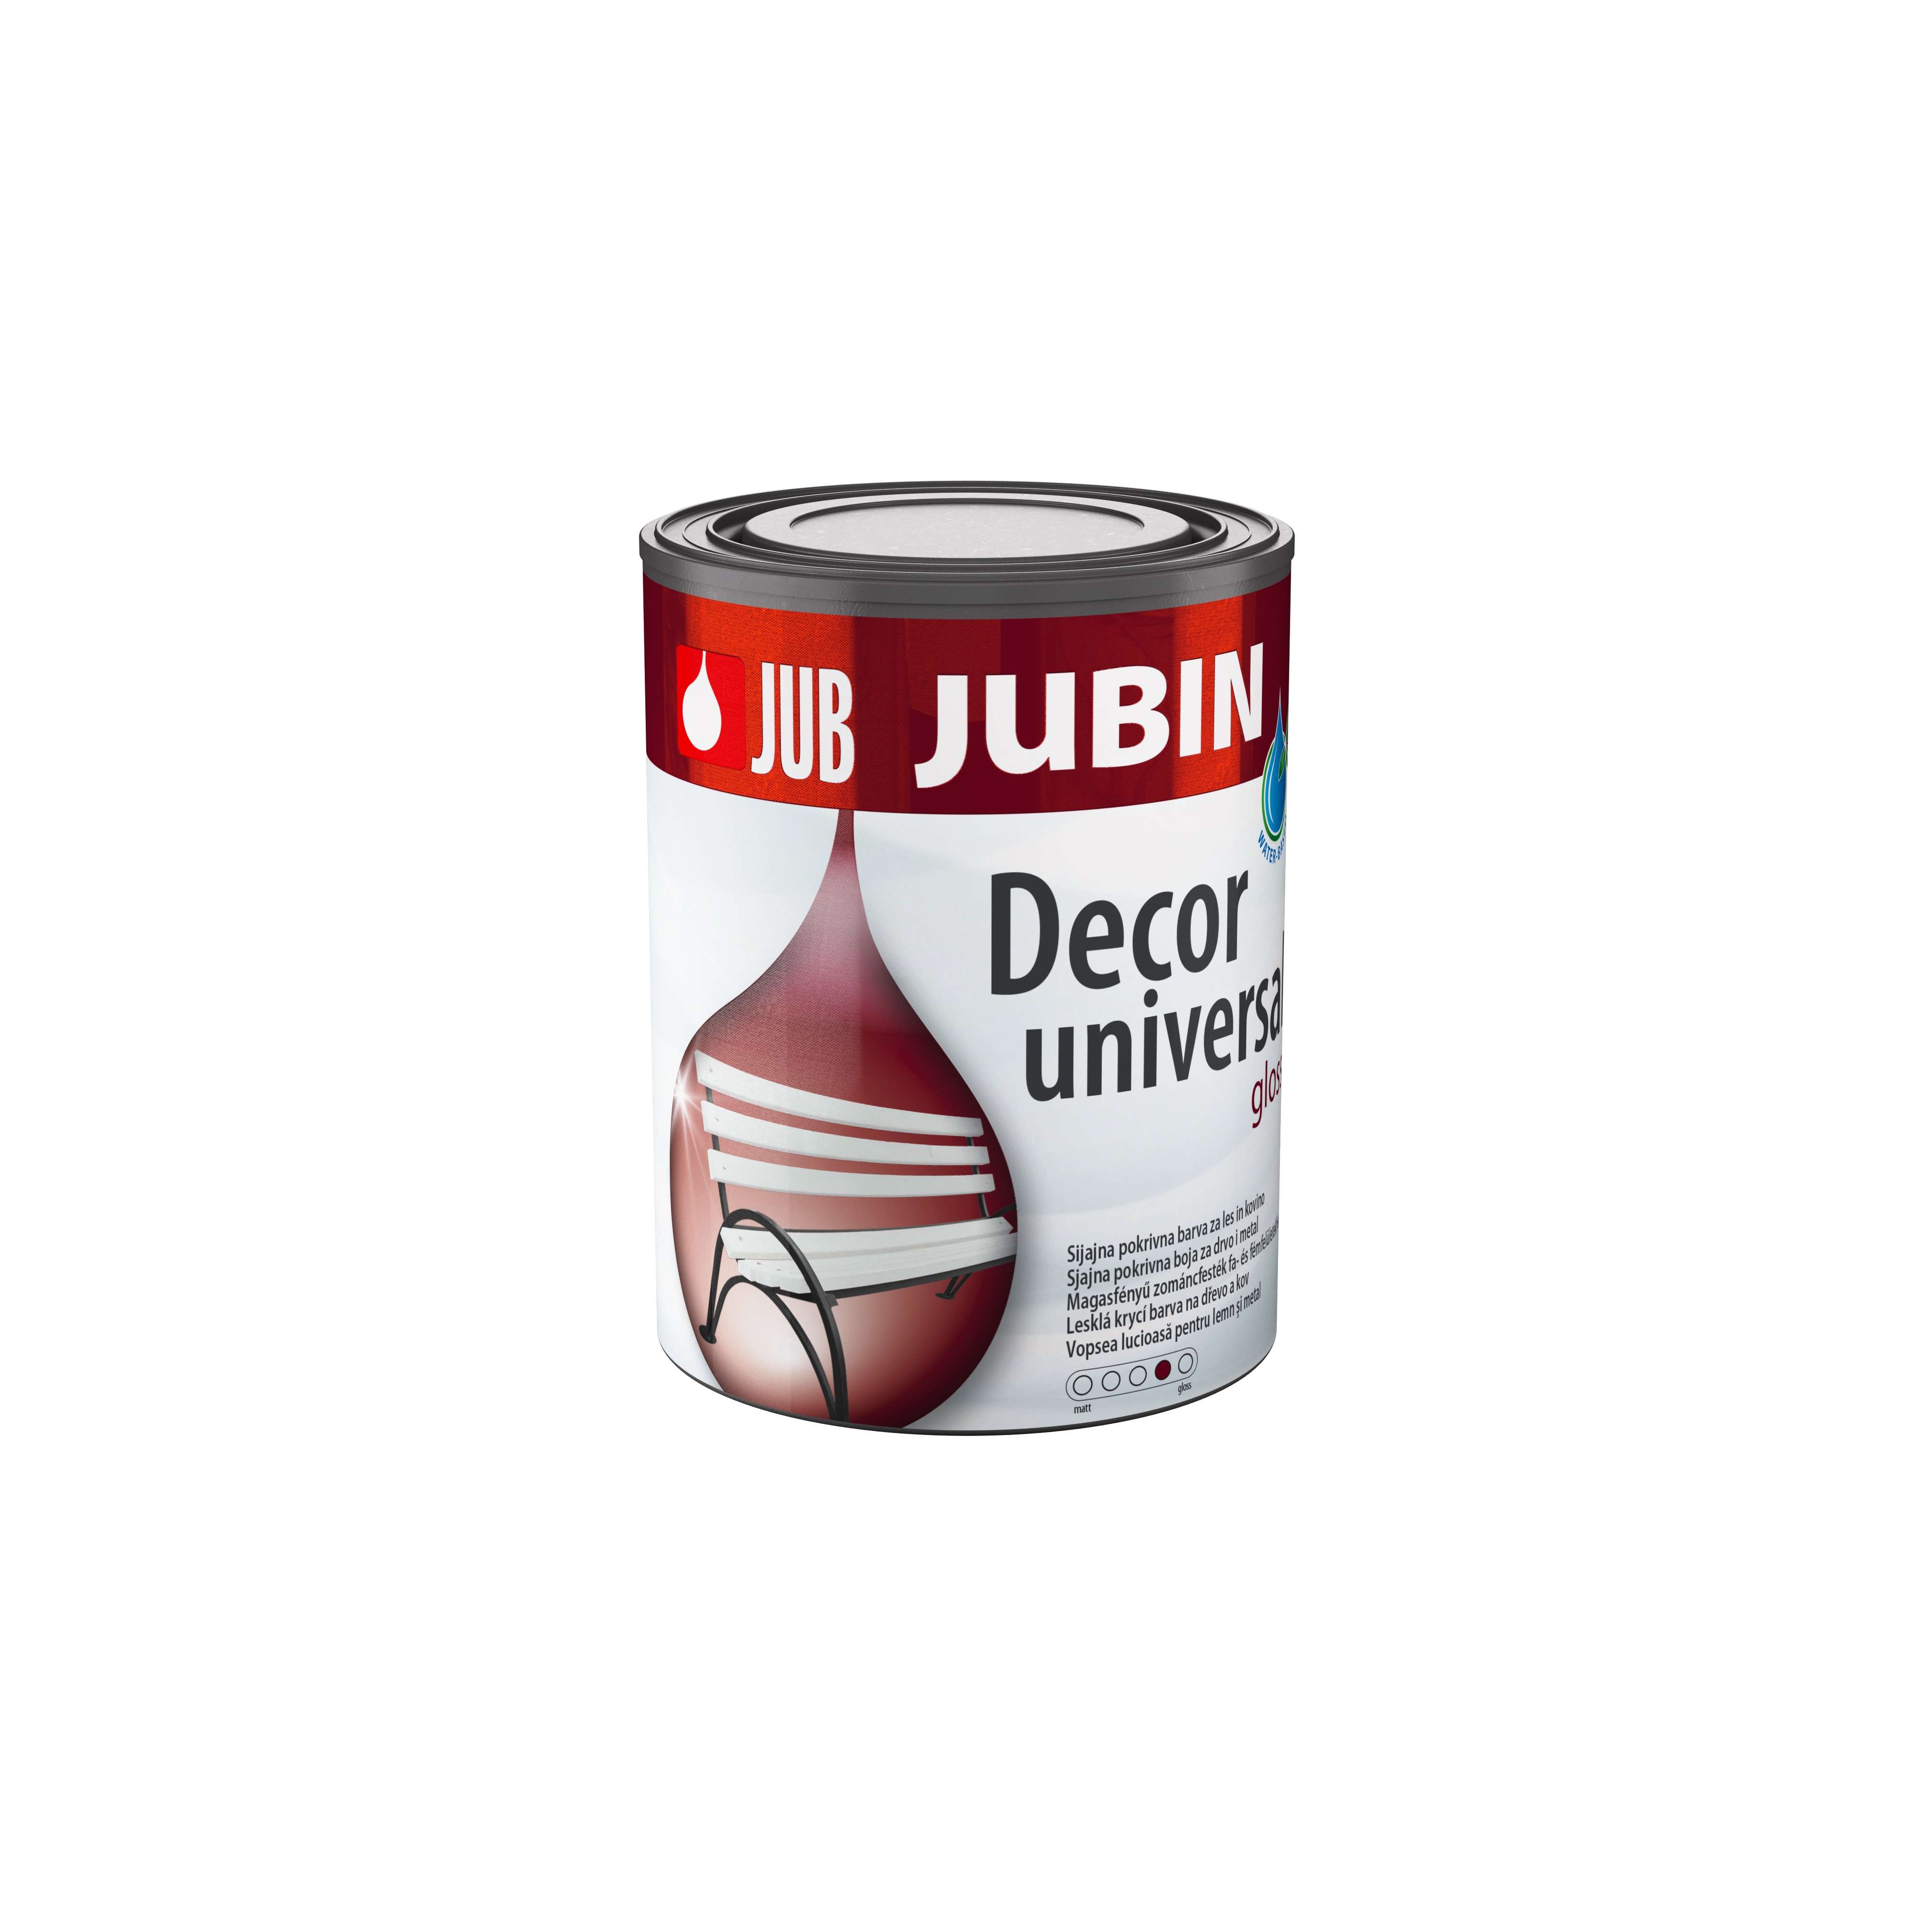 Jub Jubin Decor universal * Akrylátová krycí barva na dřevo a kov. 1